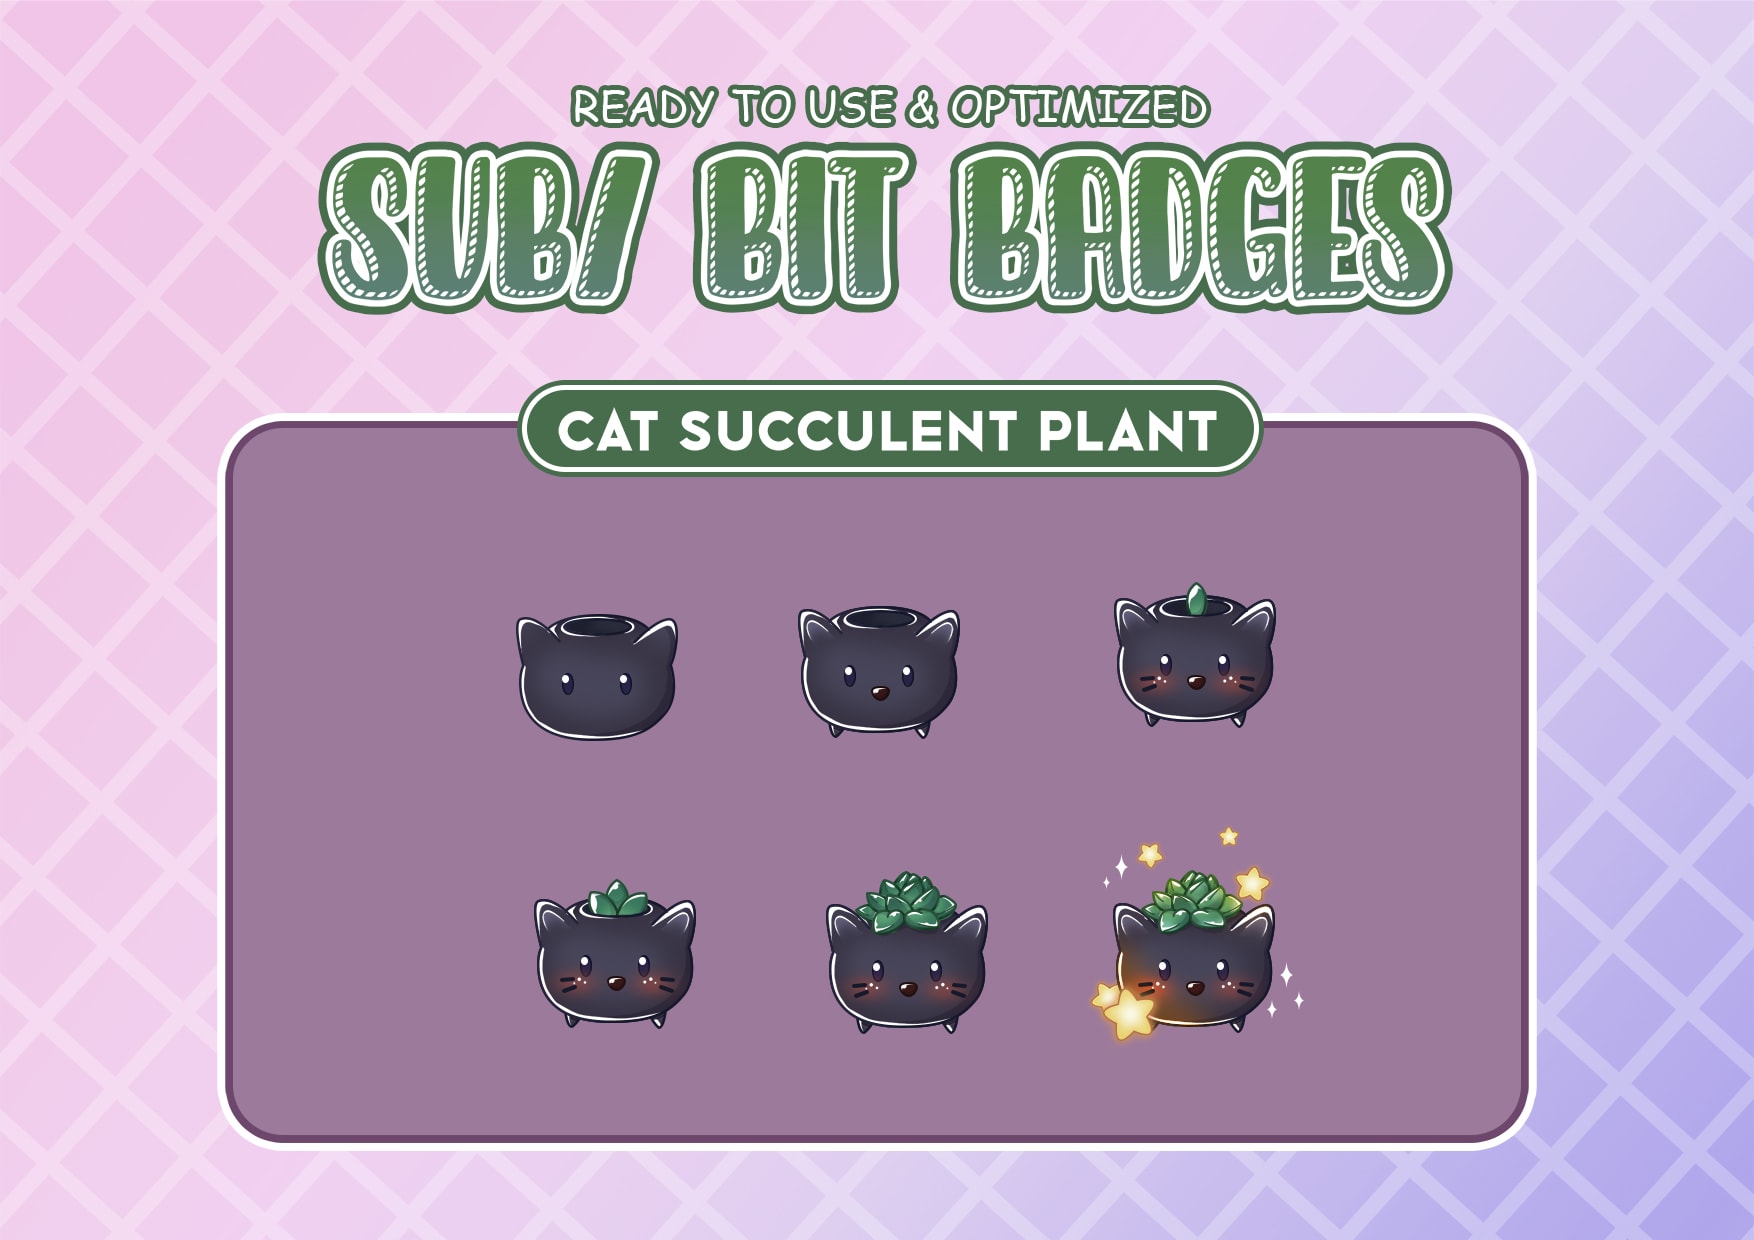 Cat Sub Badges, Twitch Sub Badges